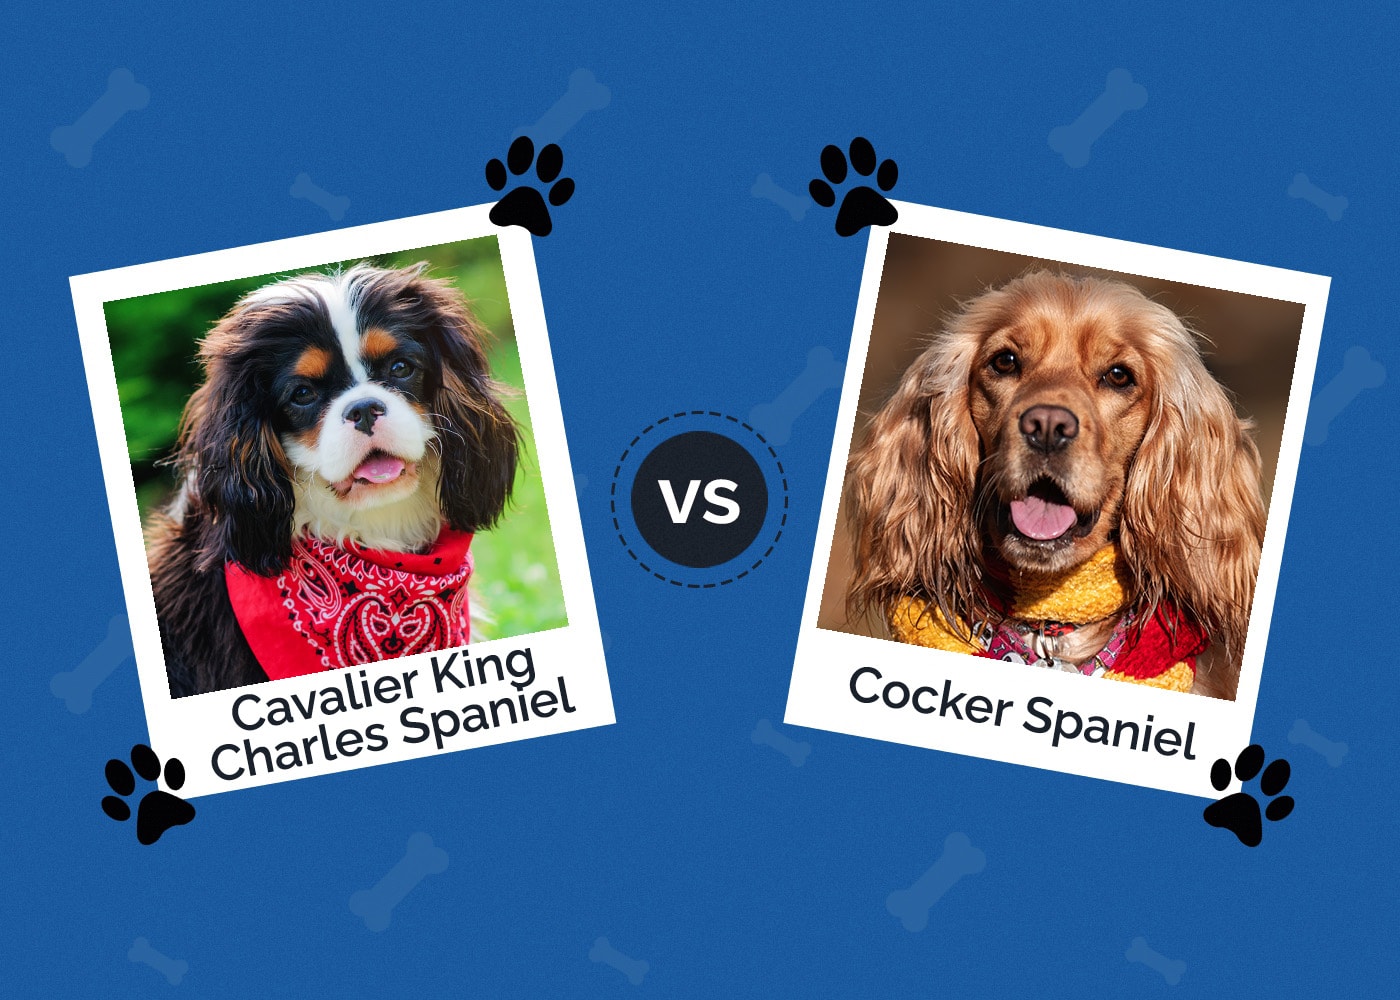 Cavalier King Charles Spaniel vs Cocker Spaniel